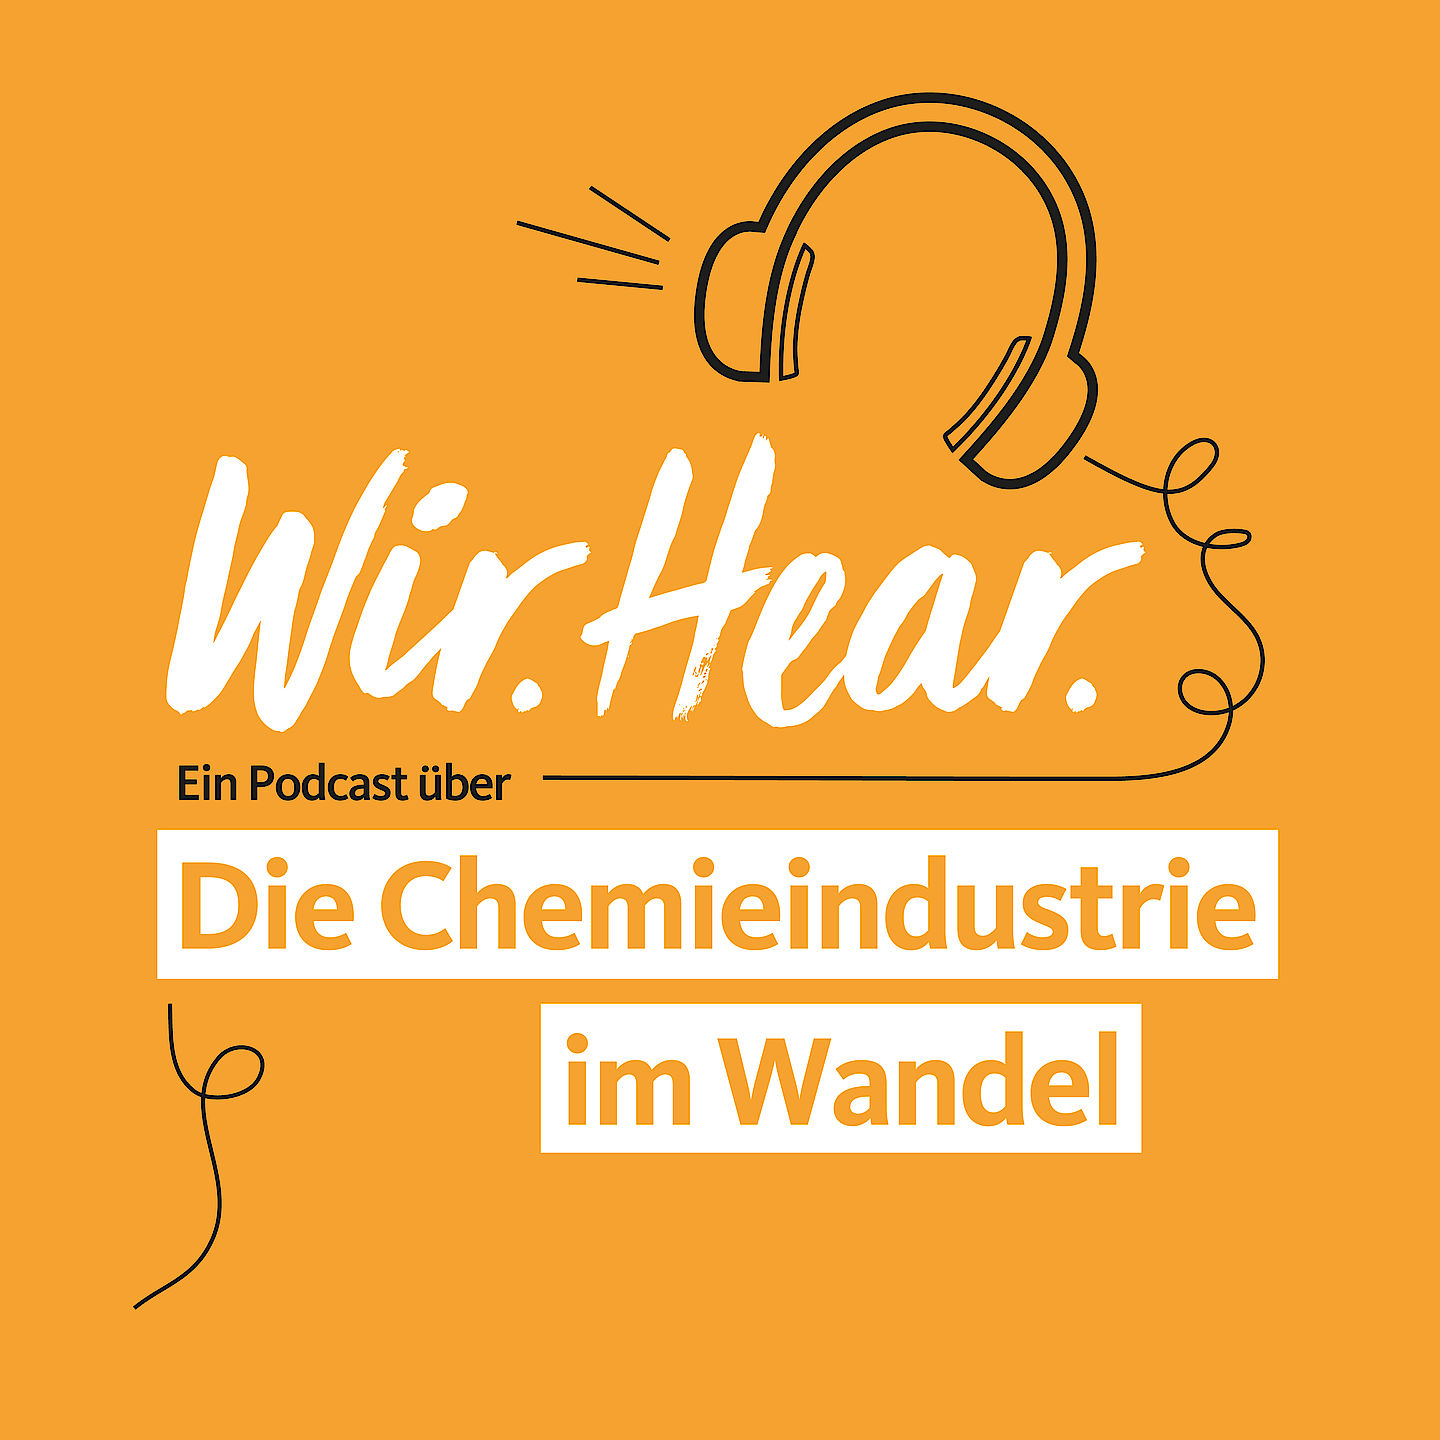 Wir. Hear. Podcast über Chemie-Industrie im Wandel